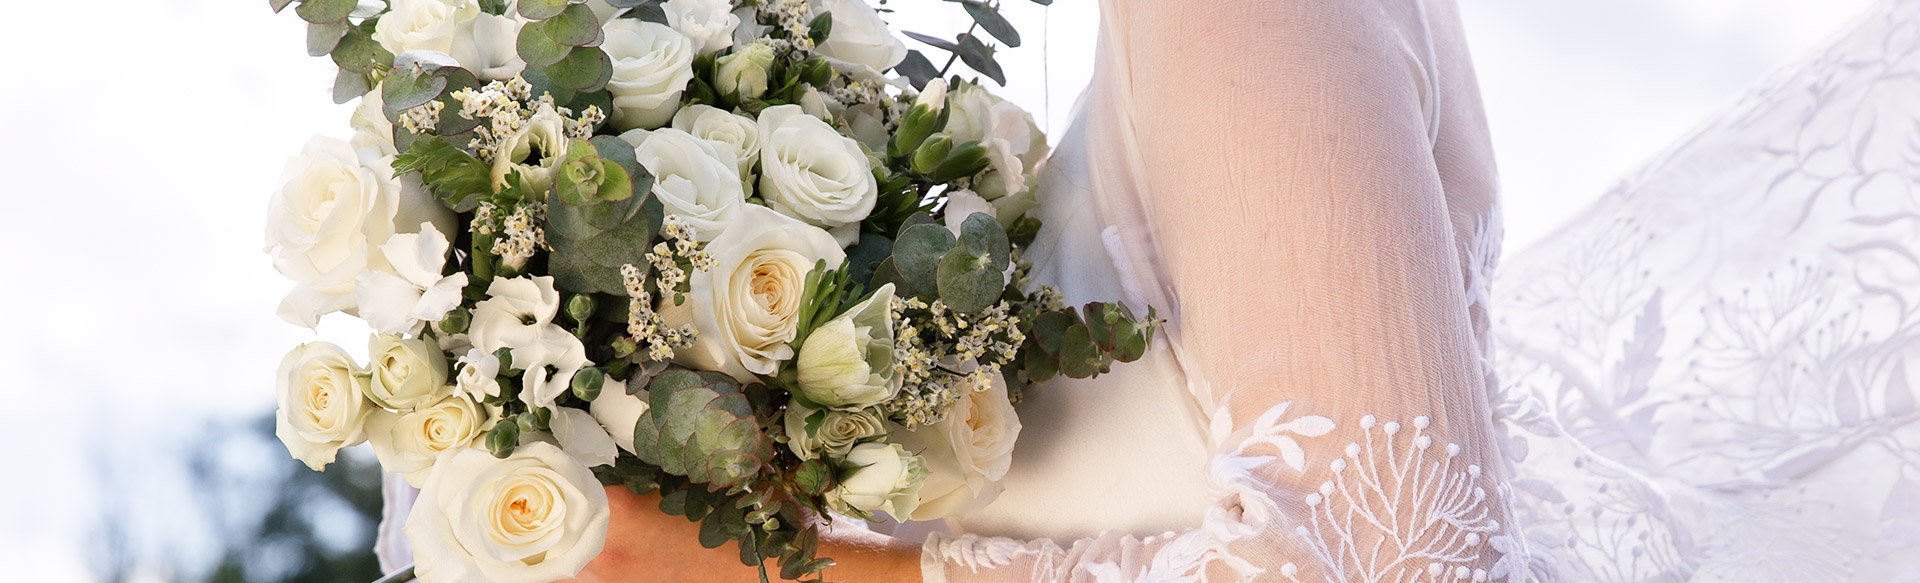 white-wedding-flowers-onlline.jpg